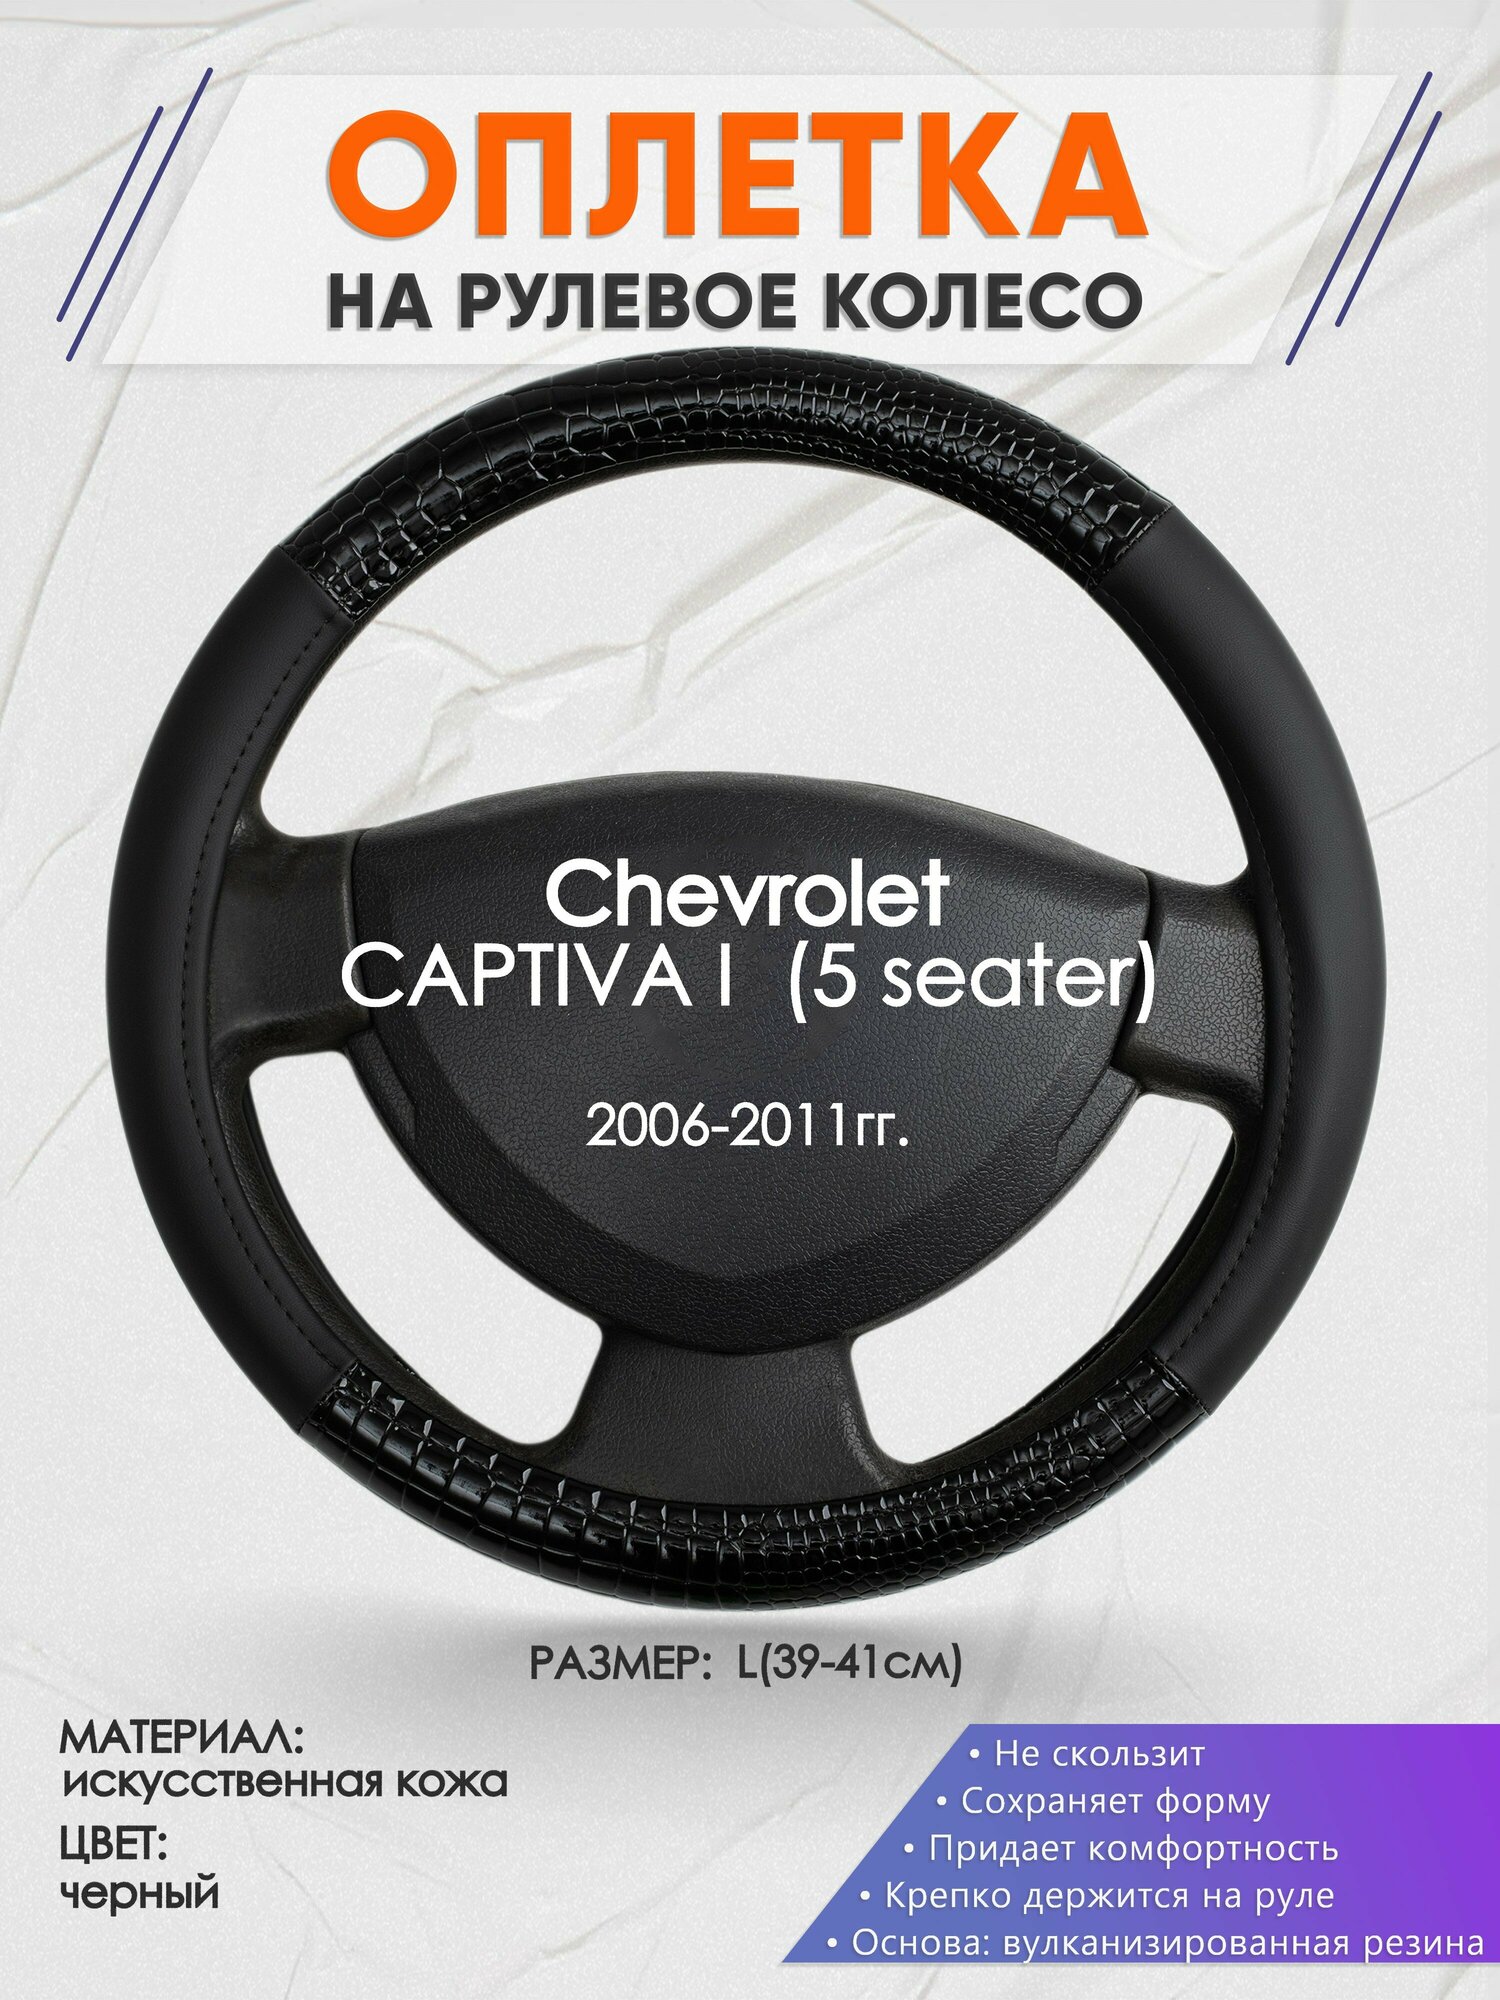 Оплетка на руль для Chevrolet CAPTIVA 1 (5 seater)(Шевроле Каптива) 2006-2011, L(39-41см), Искусственная кожа 83